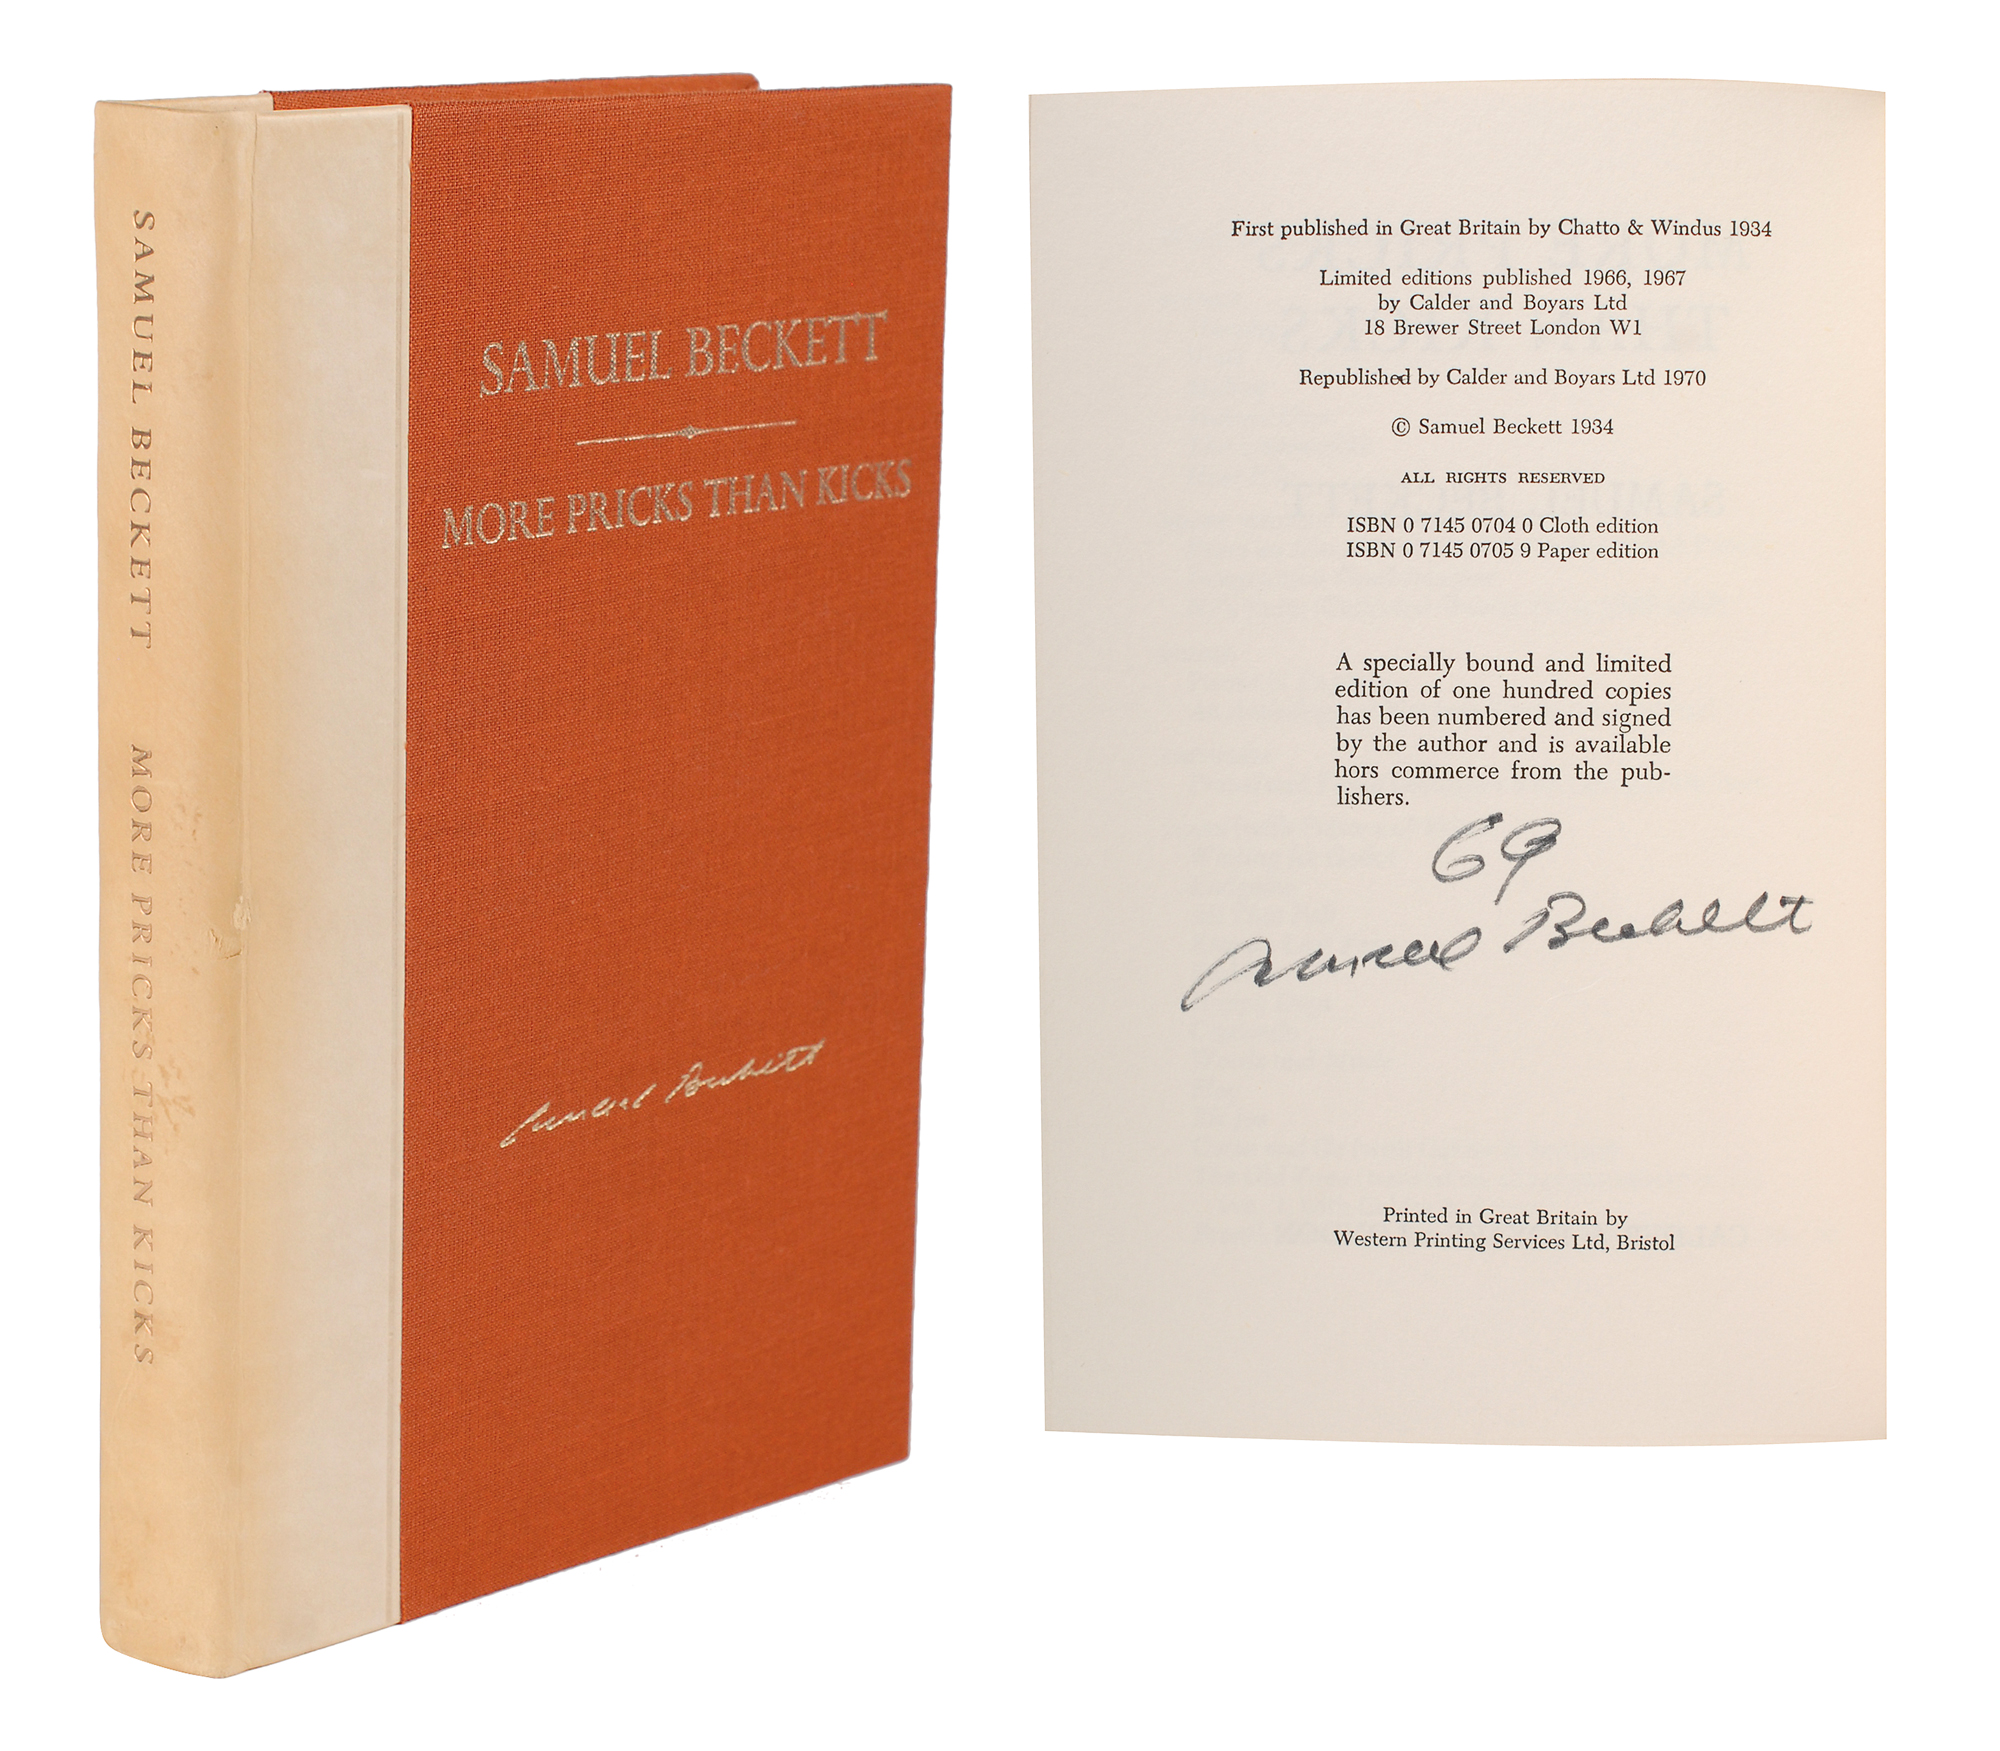 Lot #477 Samuel Beckett Signed Book